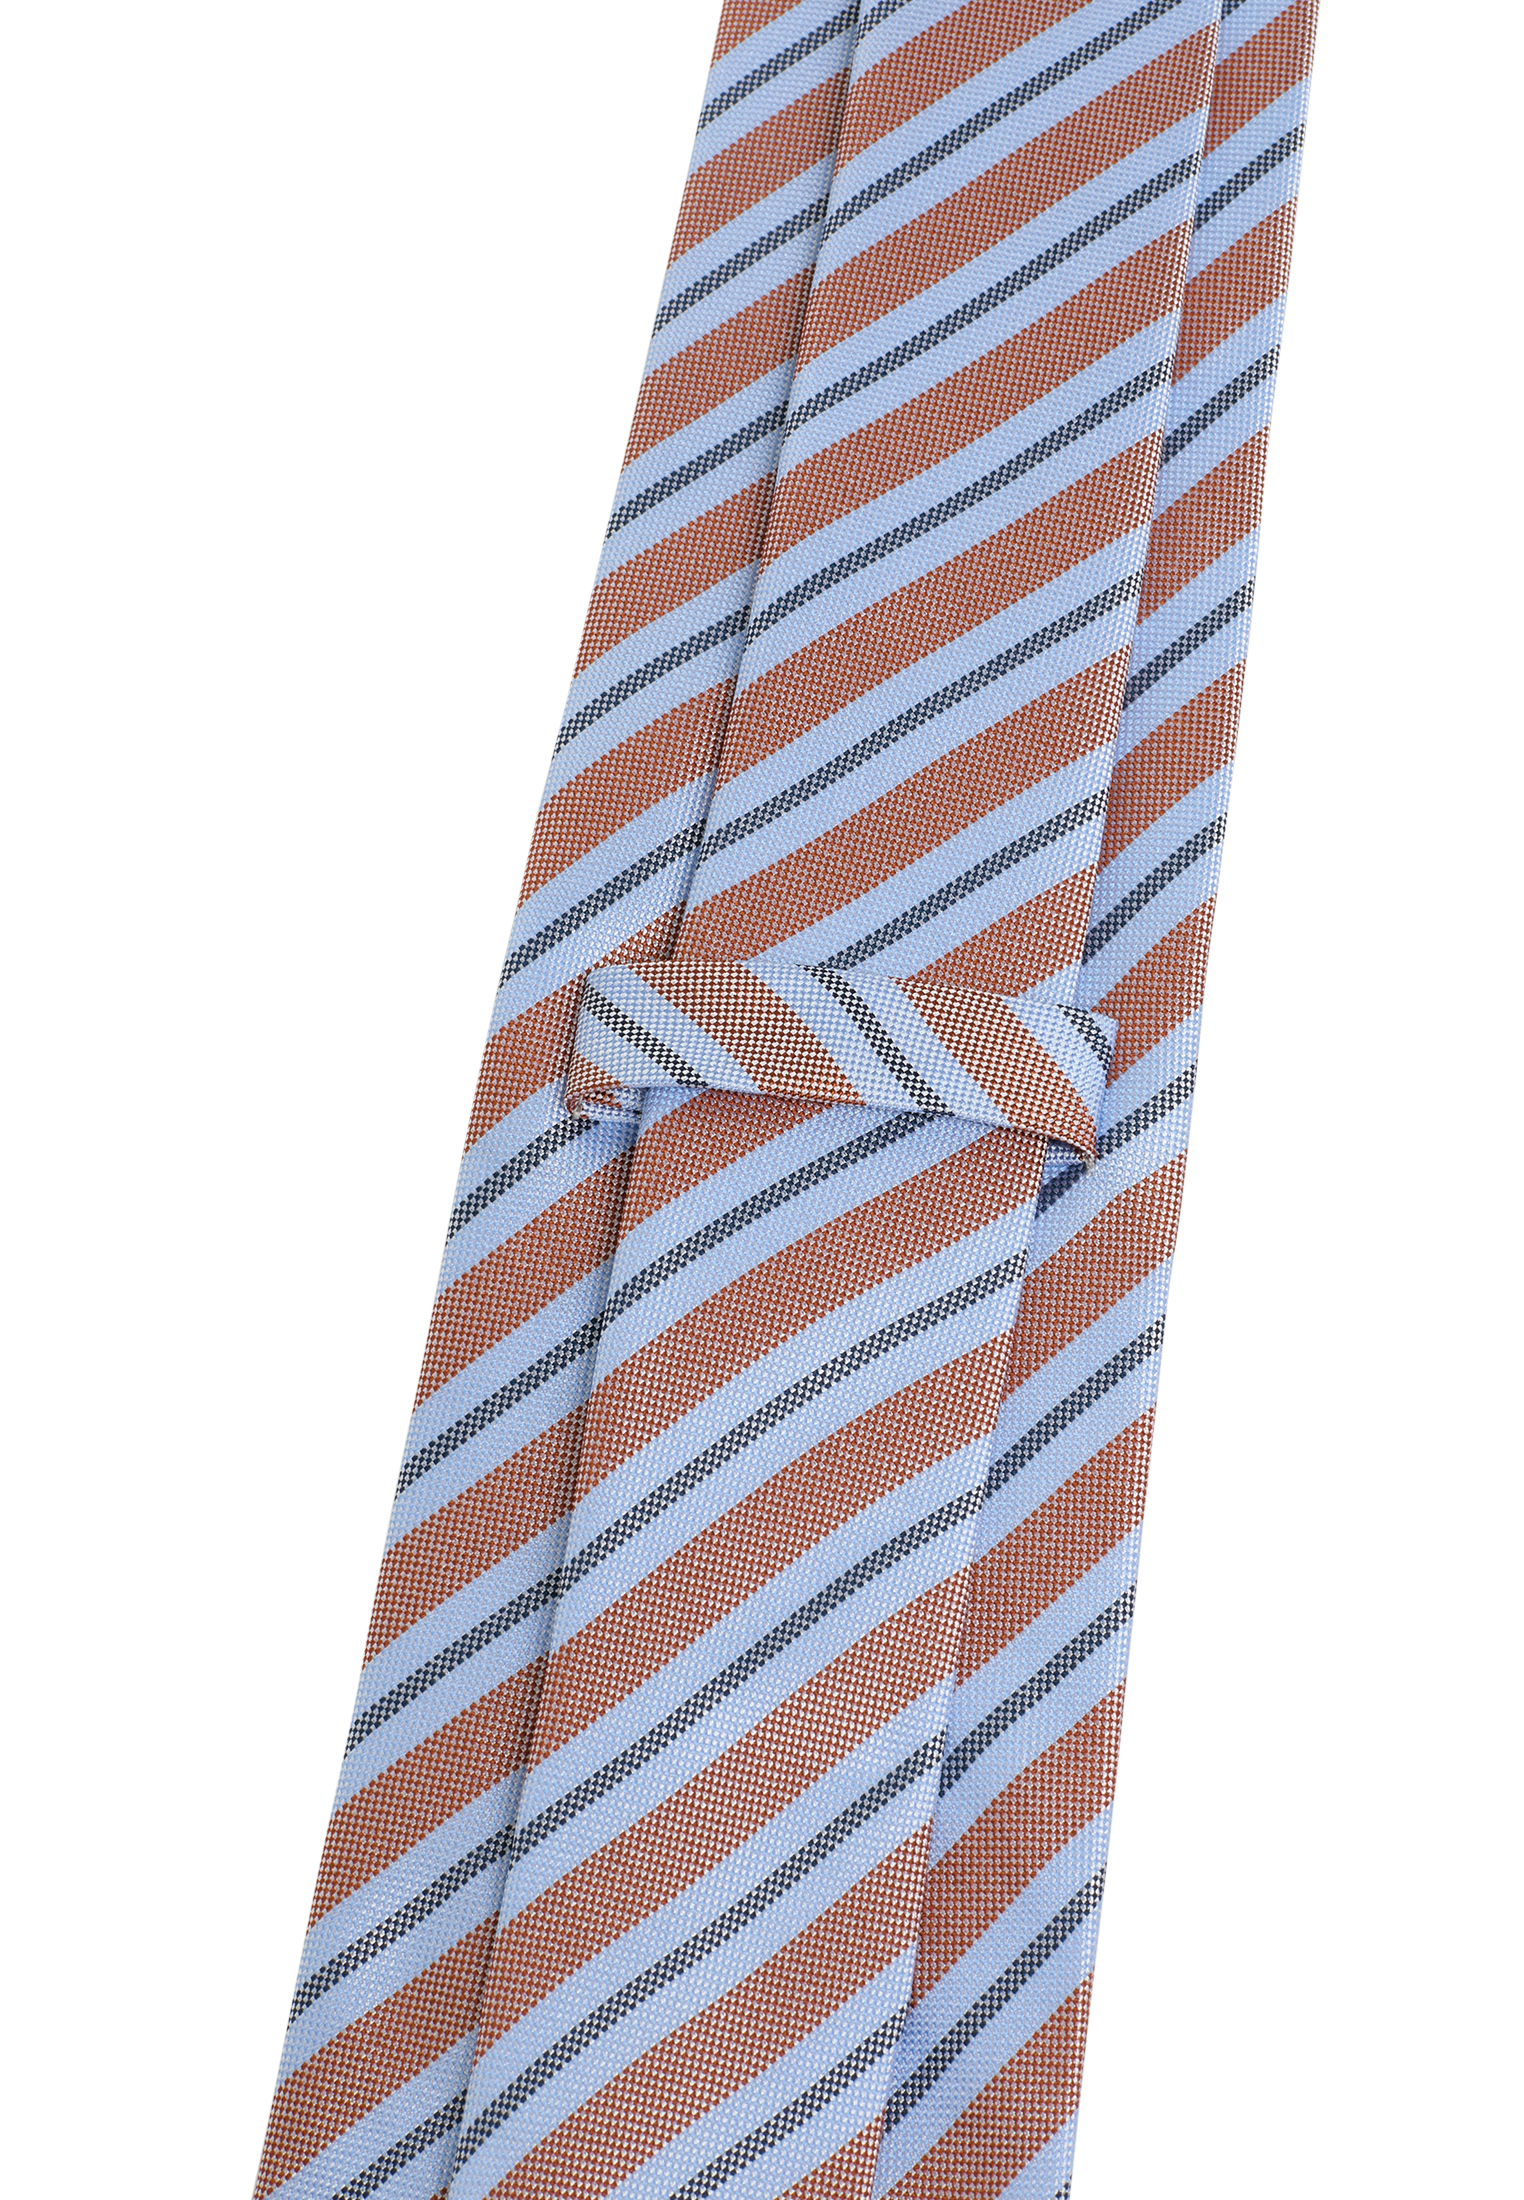 gemustert Krawatte in 142 | hellblau/orange | 1AC02006-81-33-142 hellblau/orange |